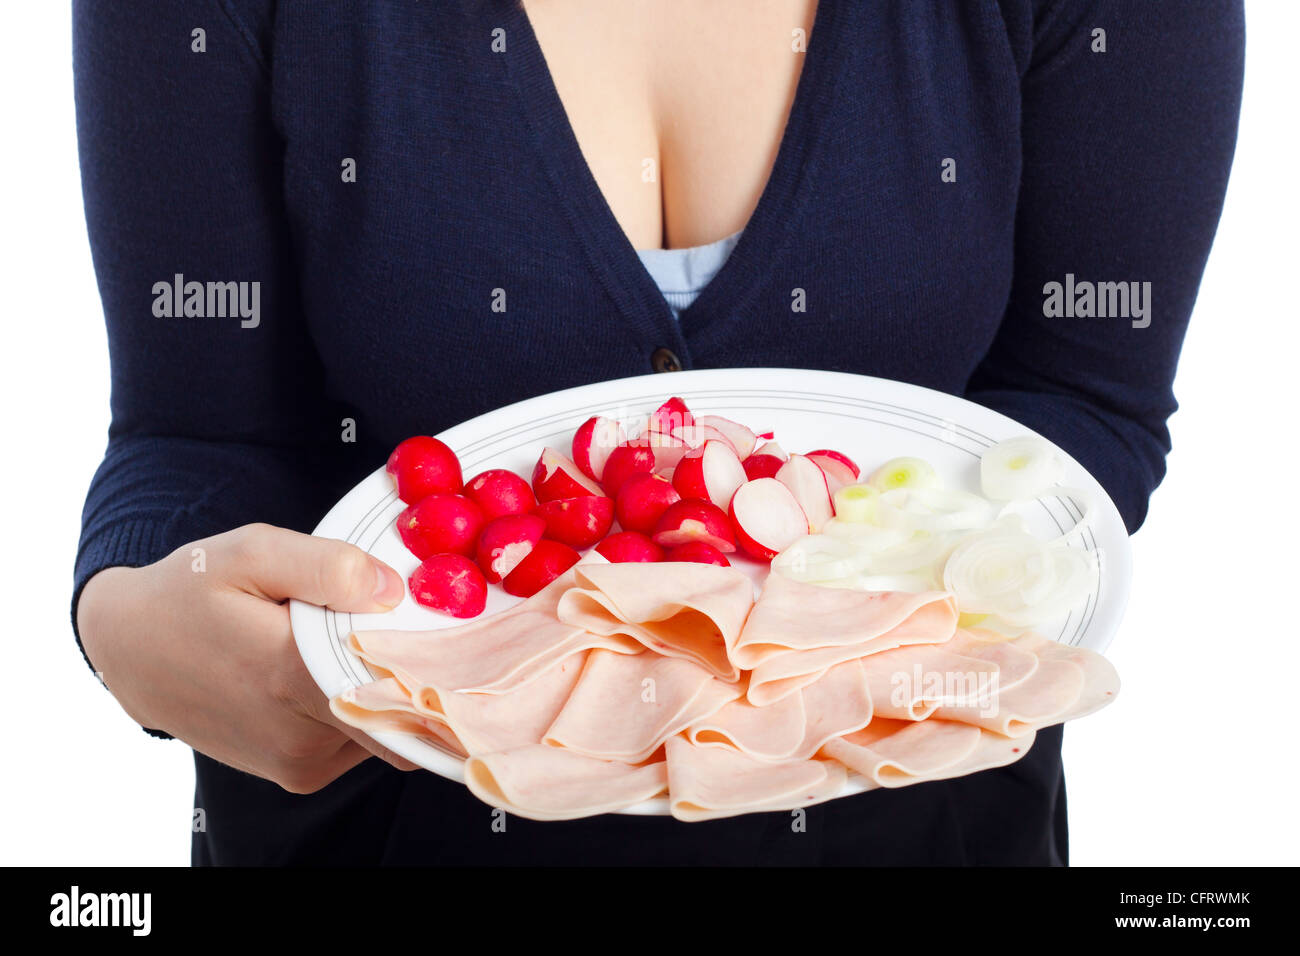 Dettaglio della donna tenendo la piastra con prosciutto, ravanelli e cipolla, isolati su sfondo bianco. Foto Stock